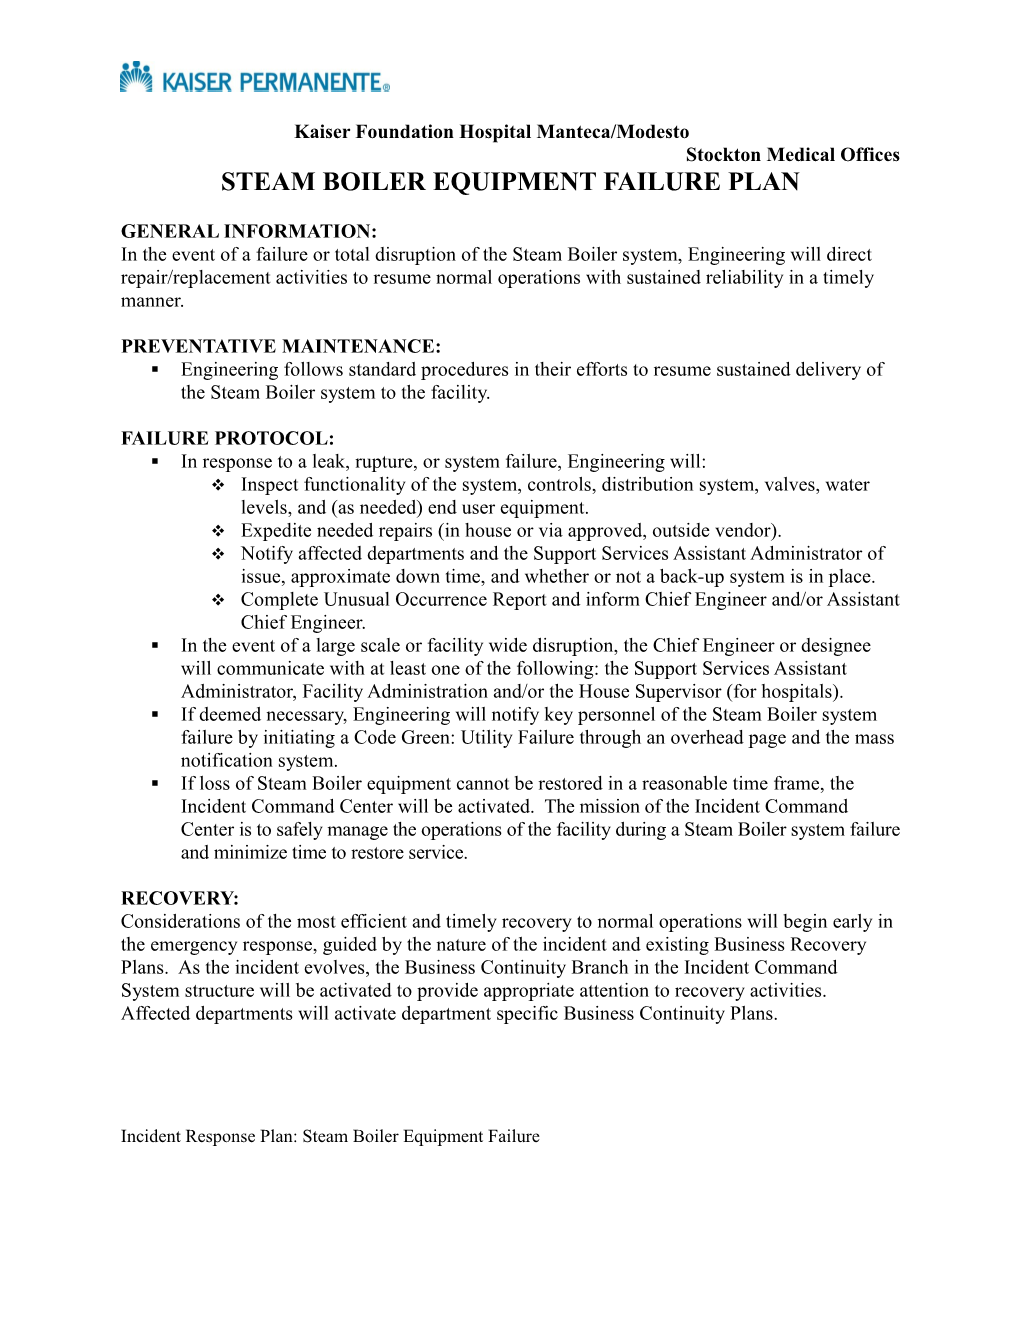 Steam Boiler Equipmentfailure Plan